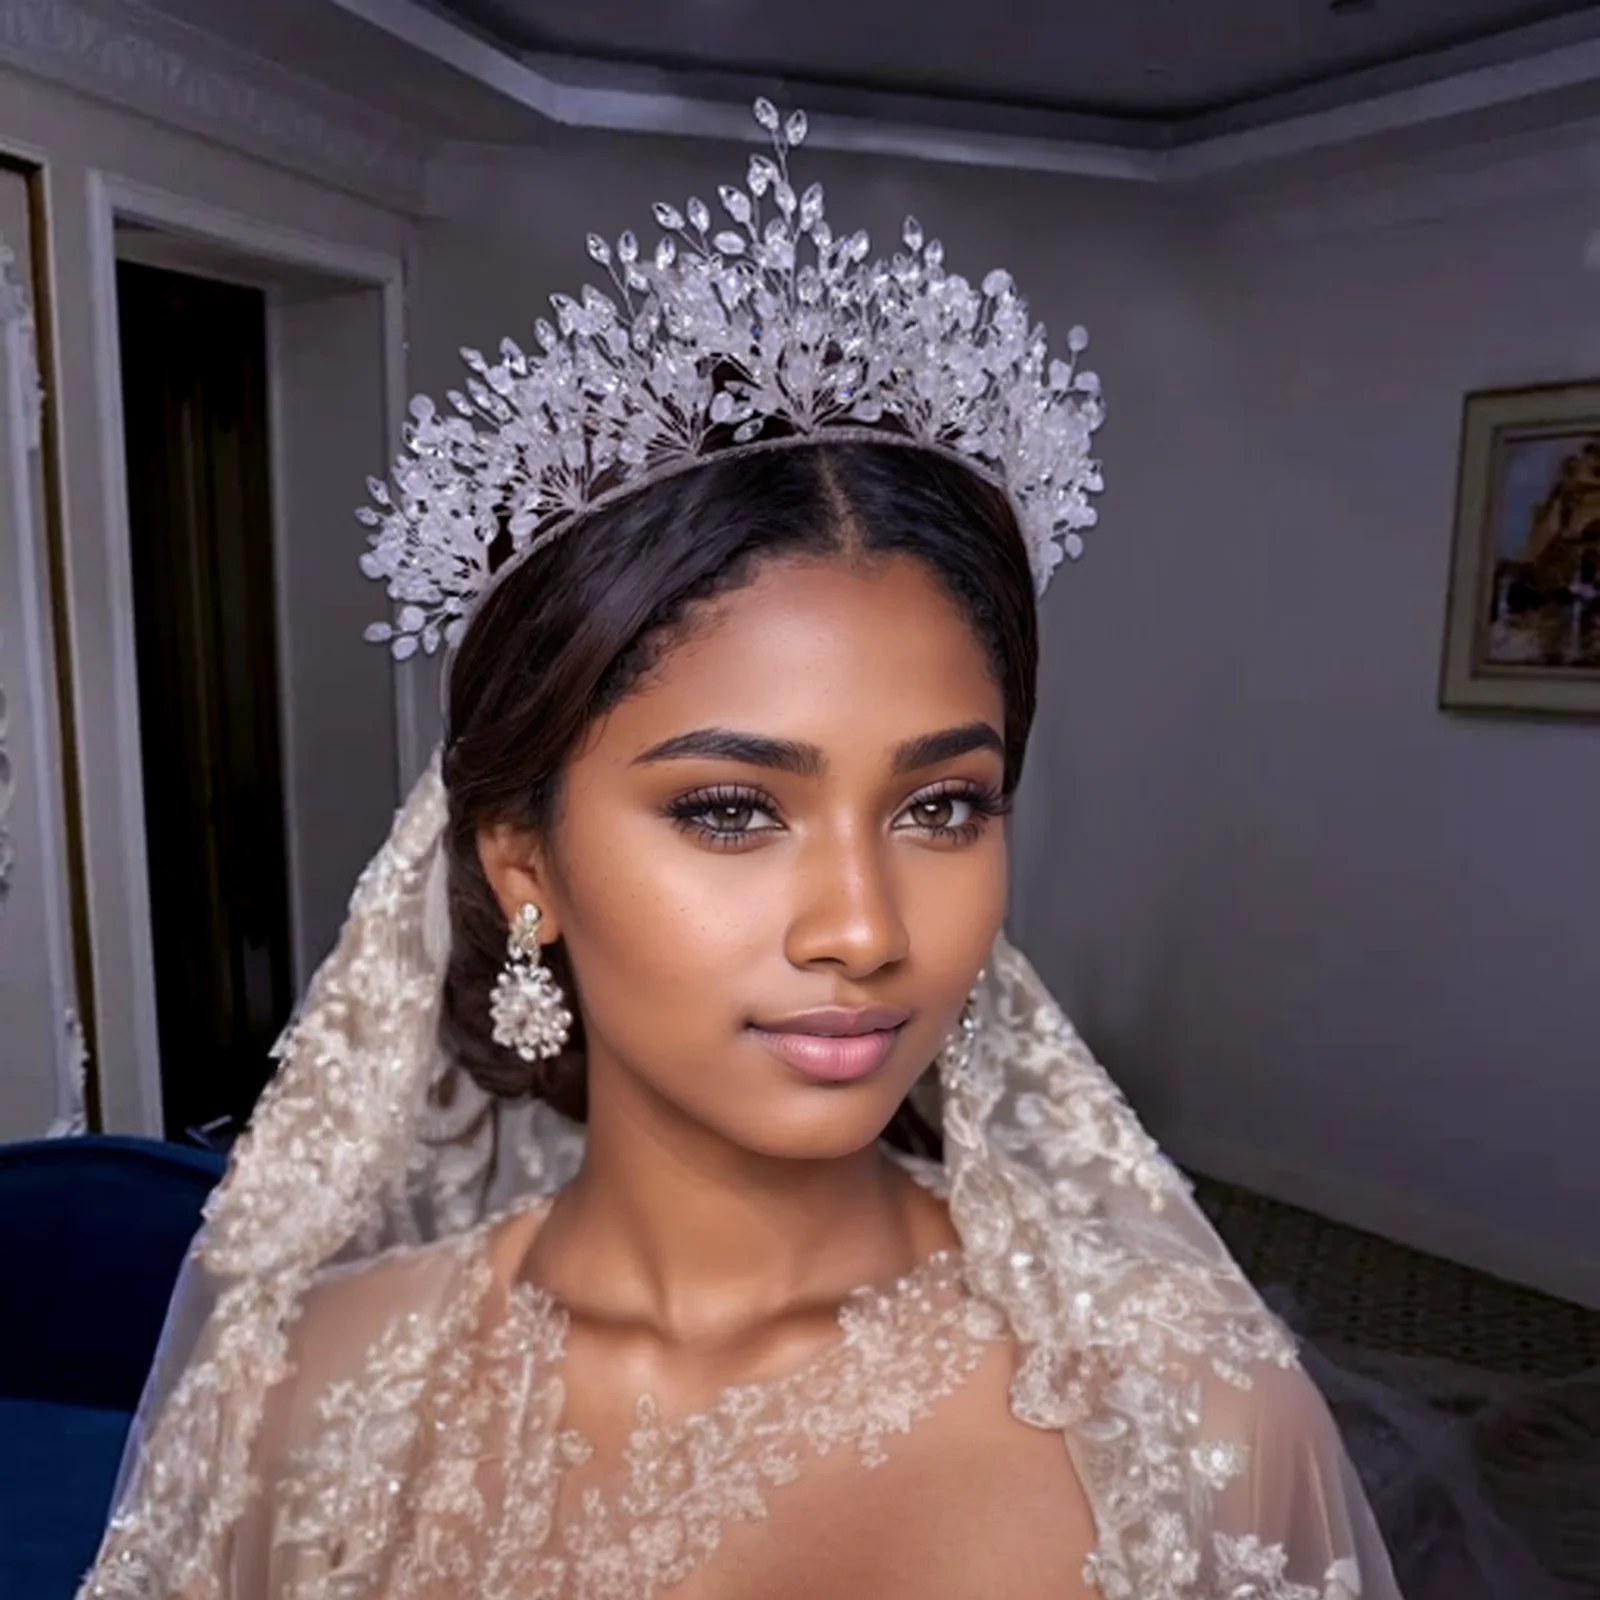 

HP361 блестящая полная фотосессия свадебная корона для девичника аксессуары для волос серебряные головные уборы ручной работы